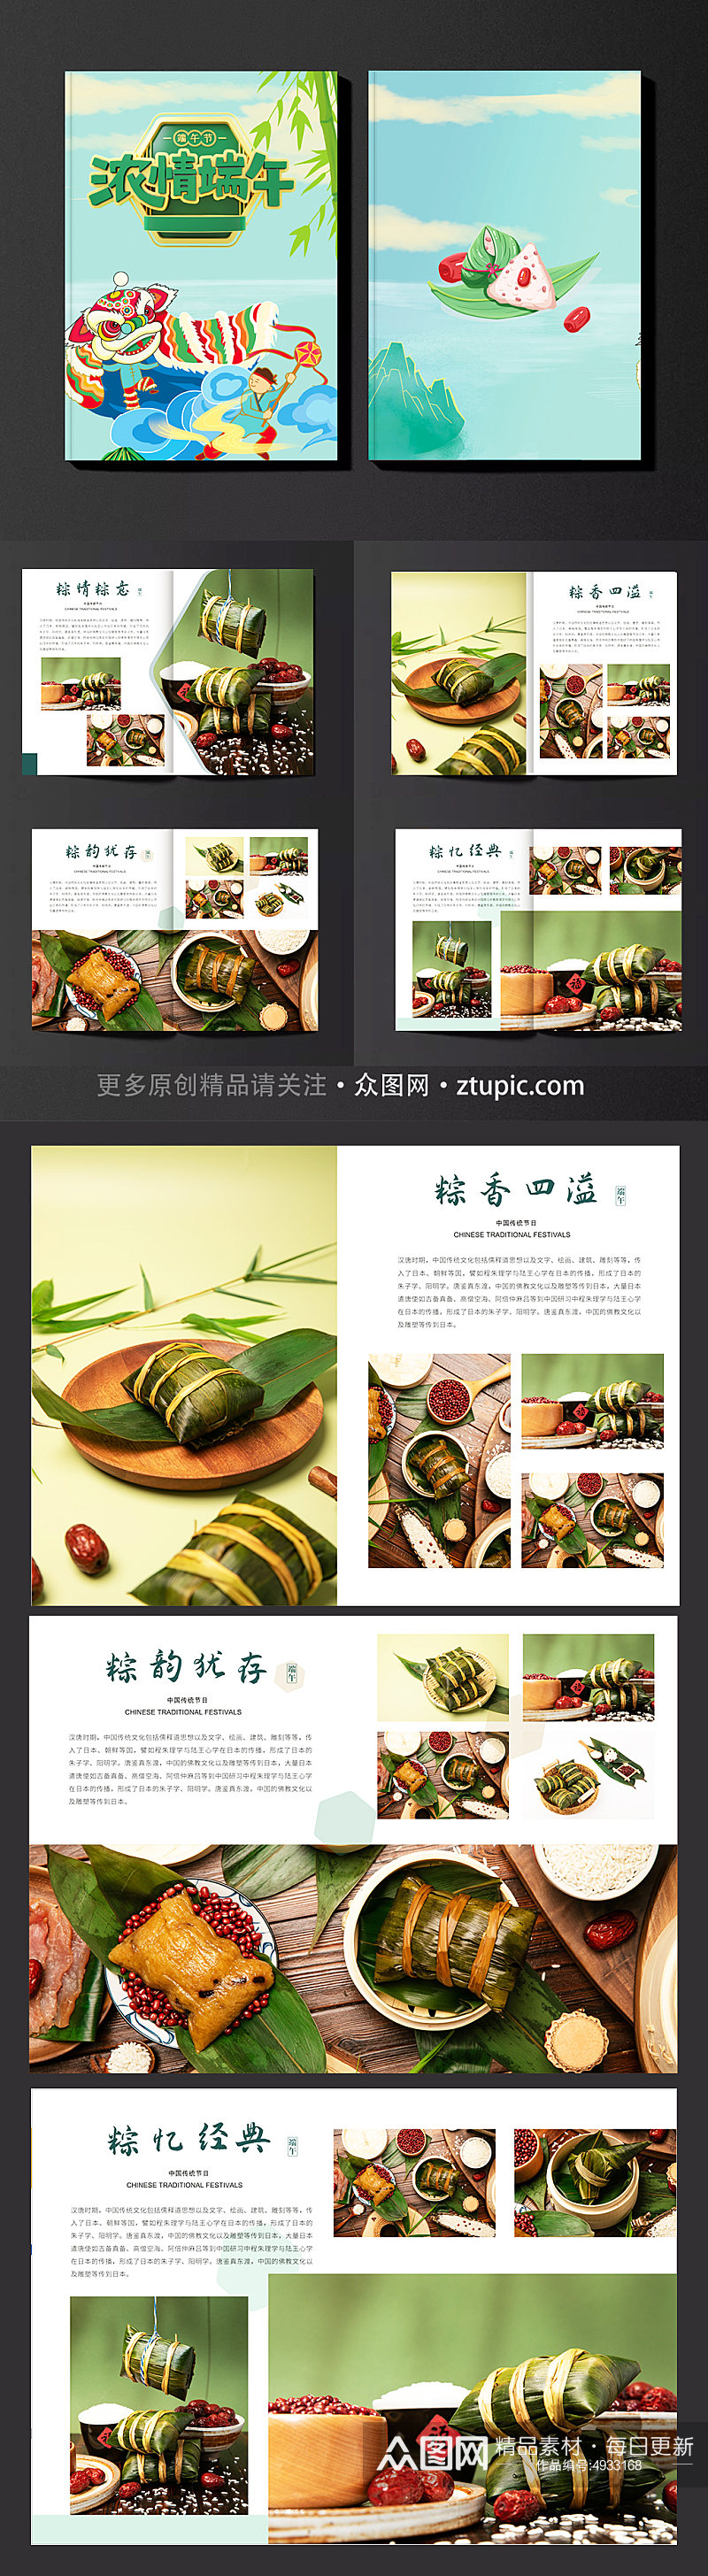 浓情端午端午节粽子美食产品画册素材